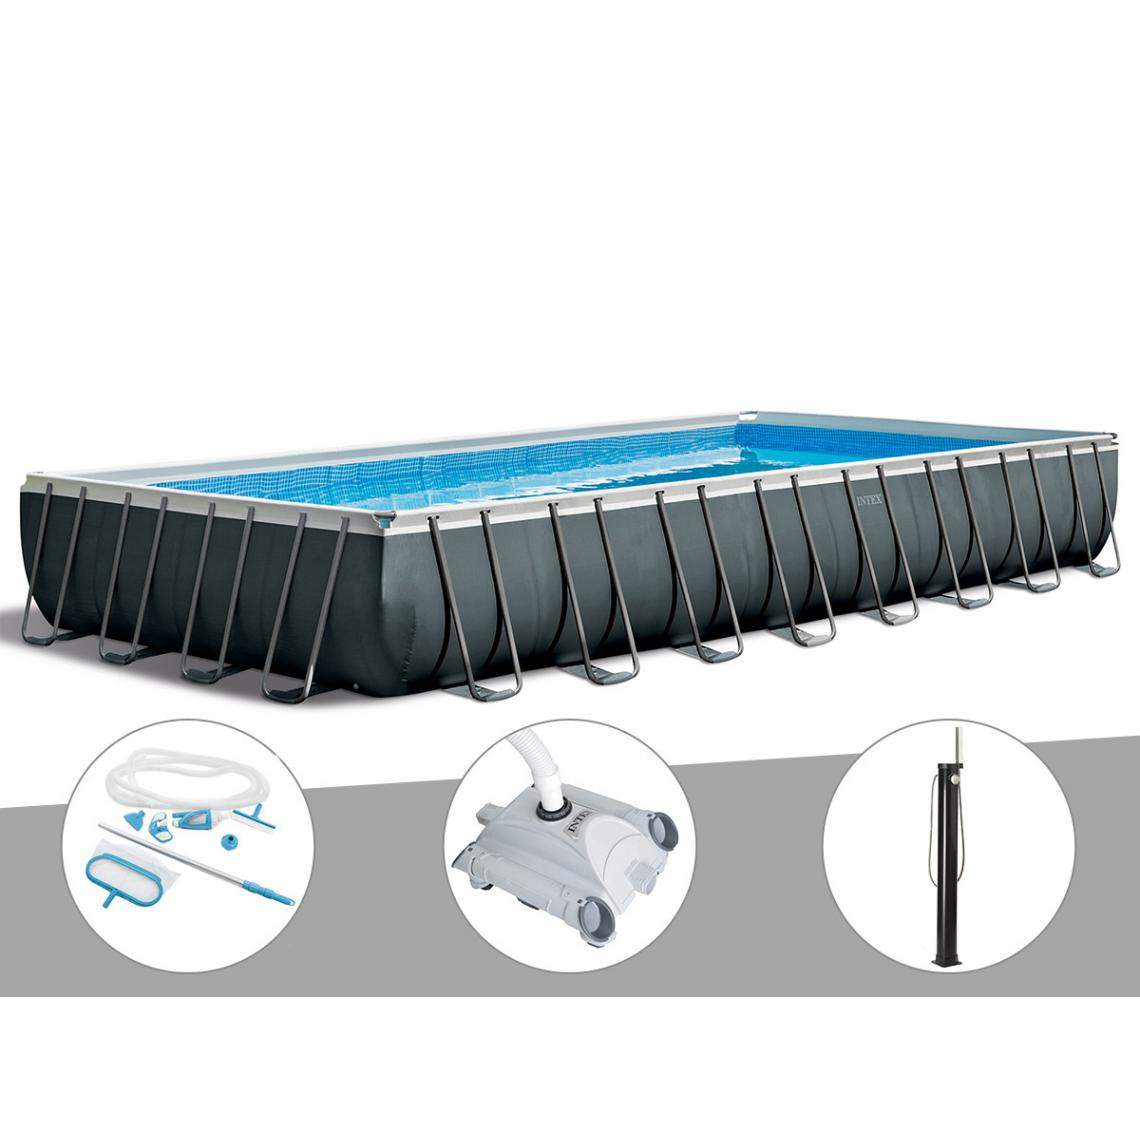 Intex - Kit piscine tubulaire Intex Ultra XTR Frame rectangulaire 9,75 x 4,88 x 1,32 m + Kit d'entretien + Robot nettoyeur + Douche solaire - Piscine Tubulaire